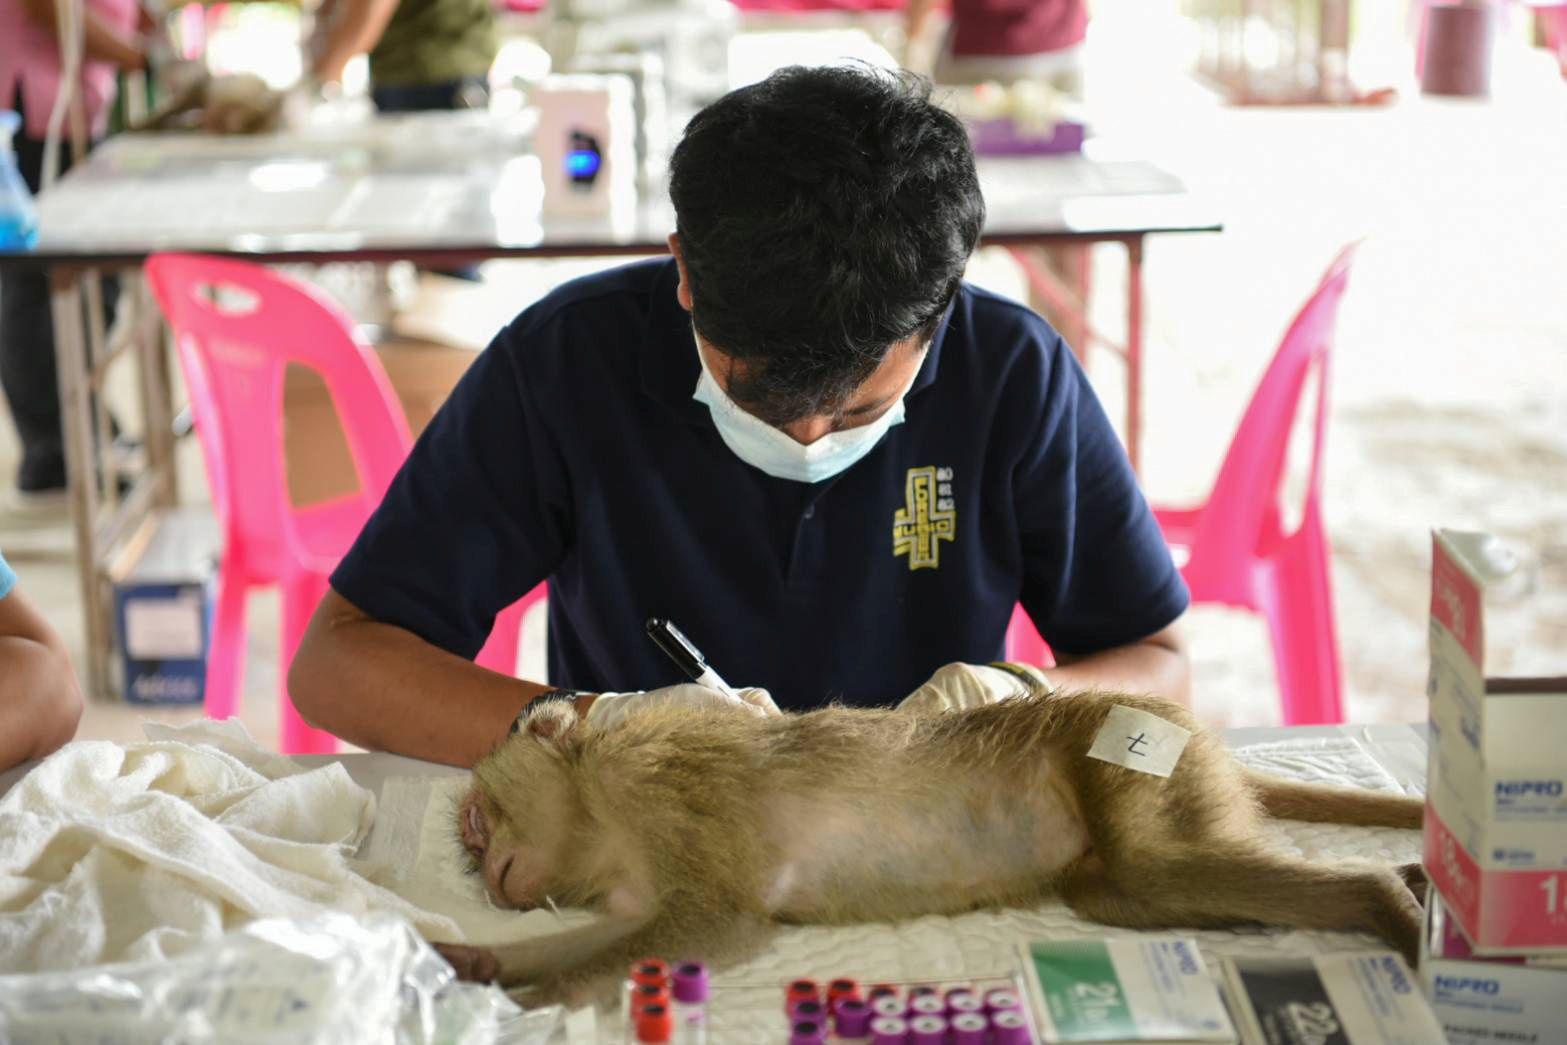 Влада Таїланду рятує 80 диких макак, яких переправляли контрабандою у пікапі